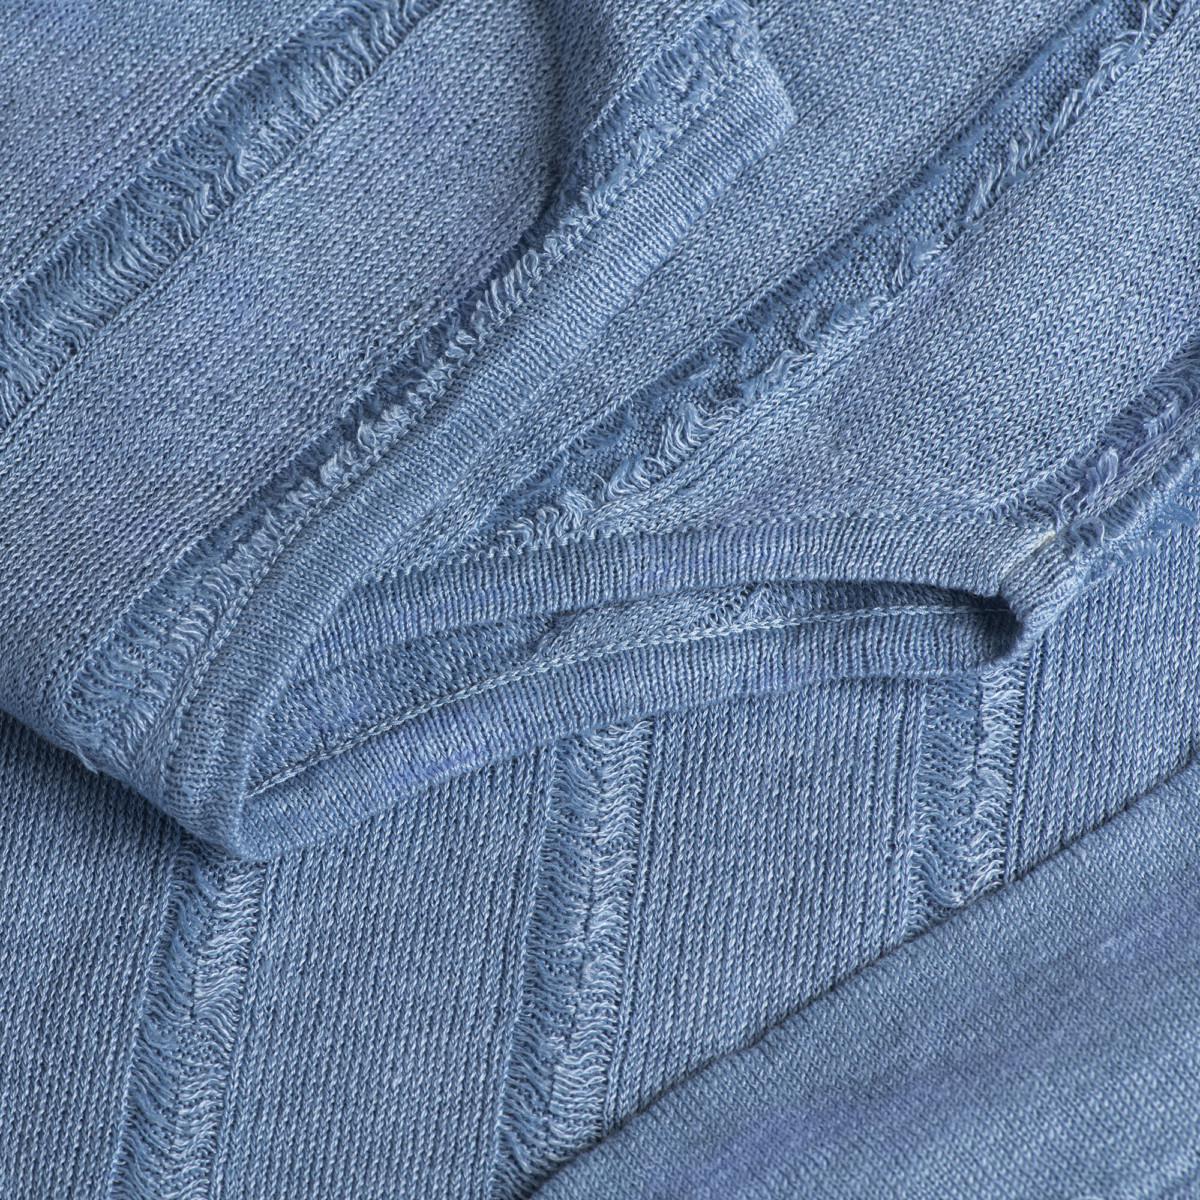 Abito sfrangiato corto 100% Capri jeans linen dress detail